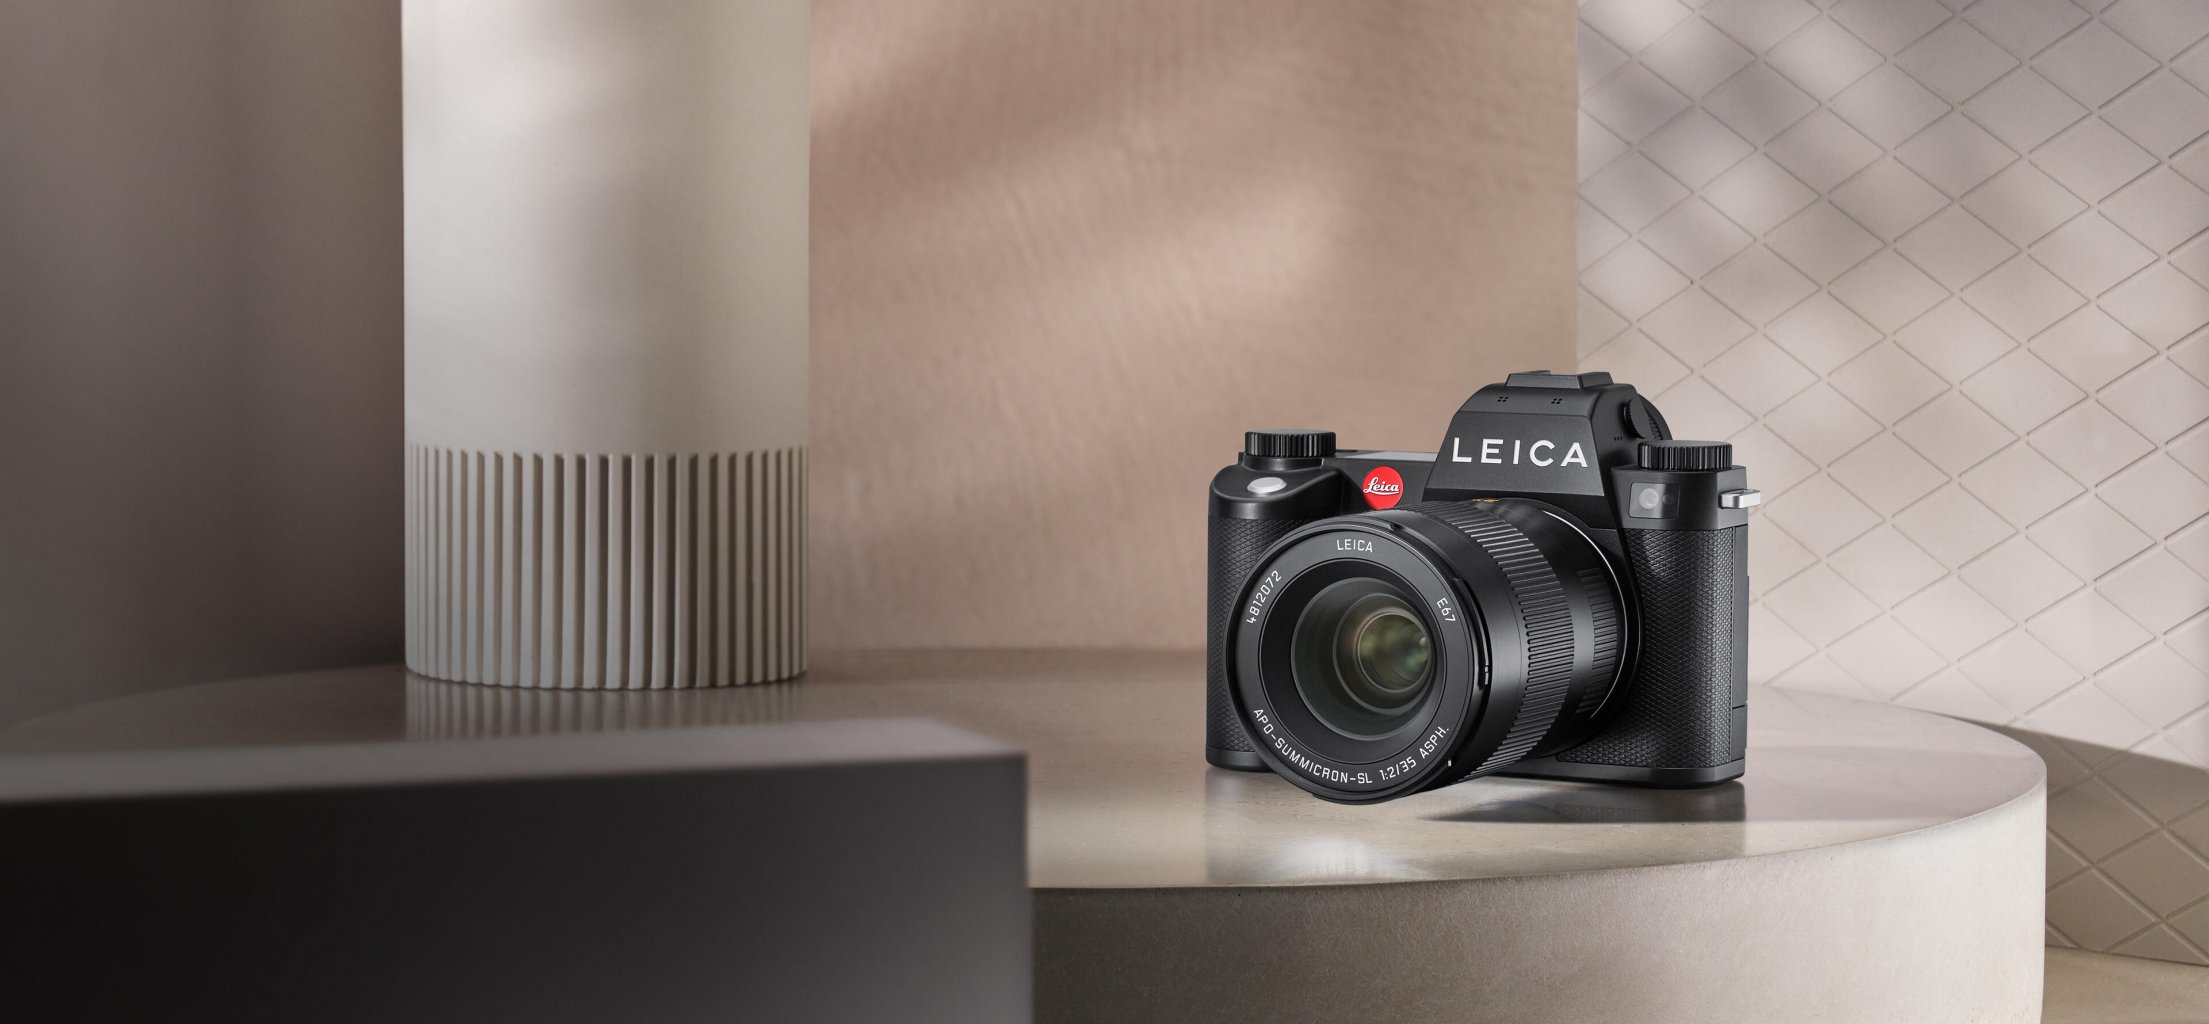 Leica SL3 Full-Frame Camera